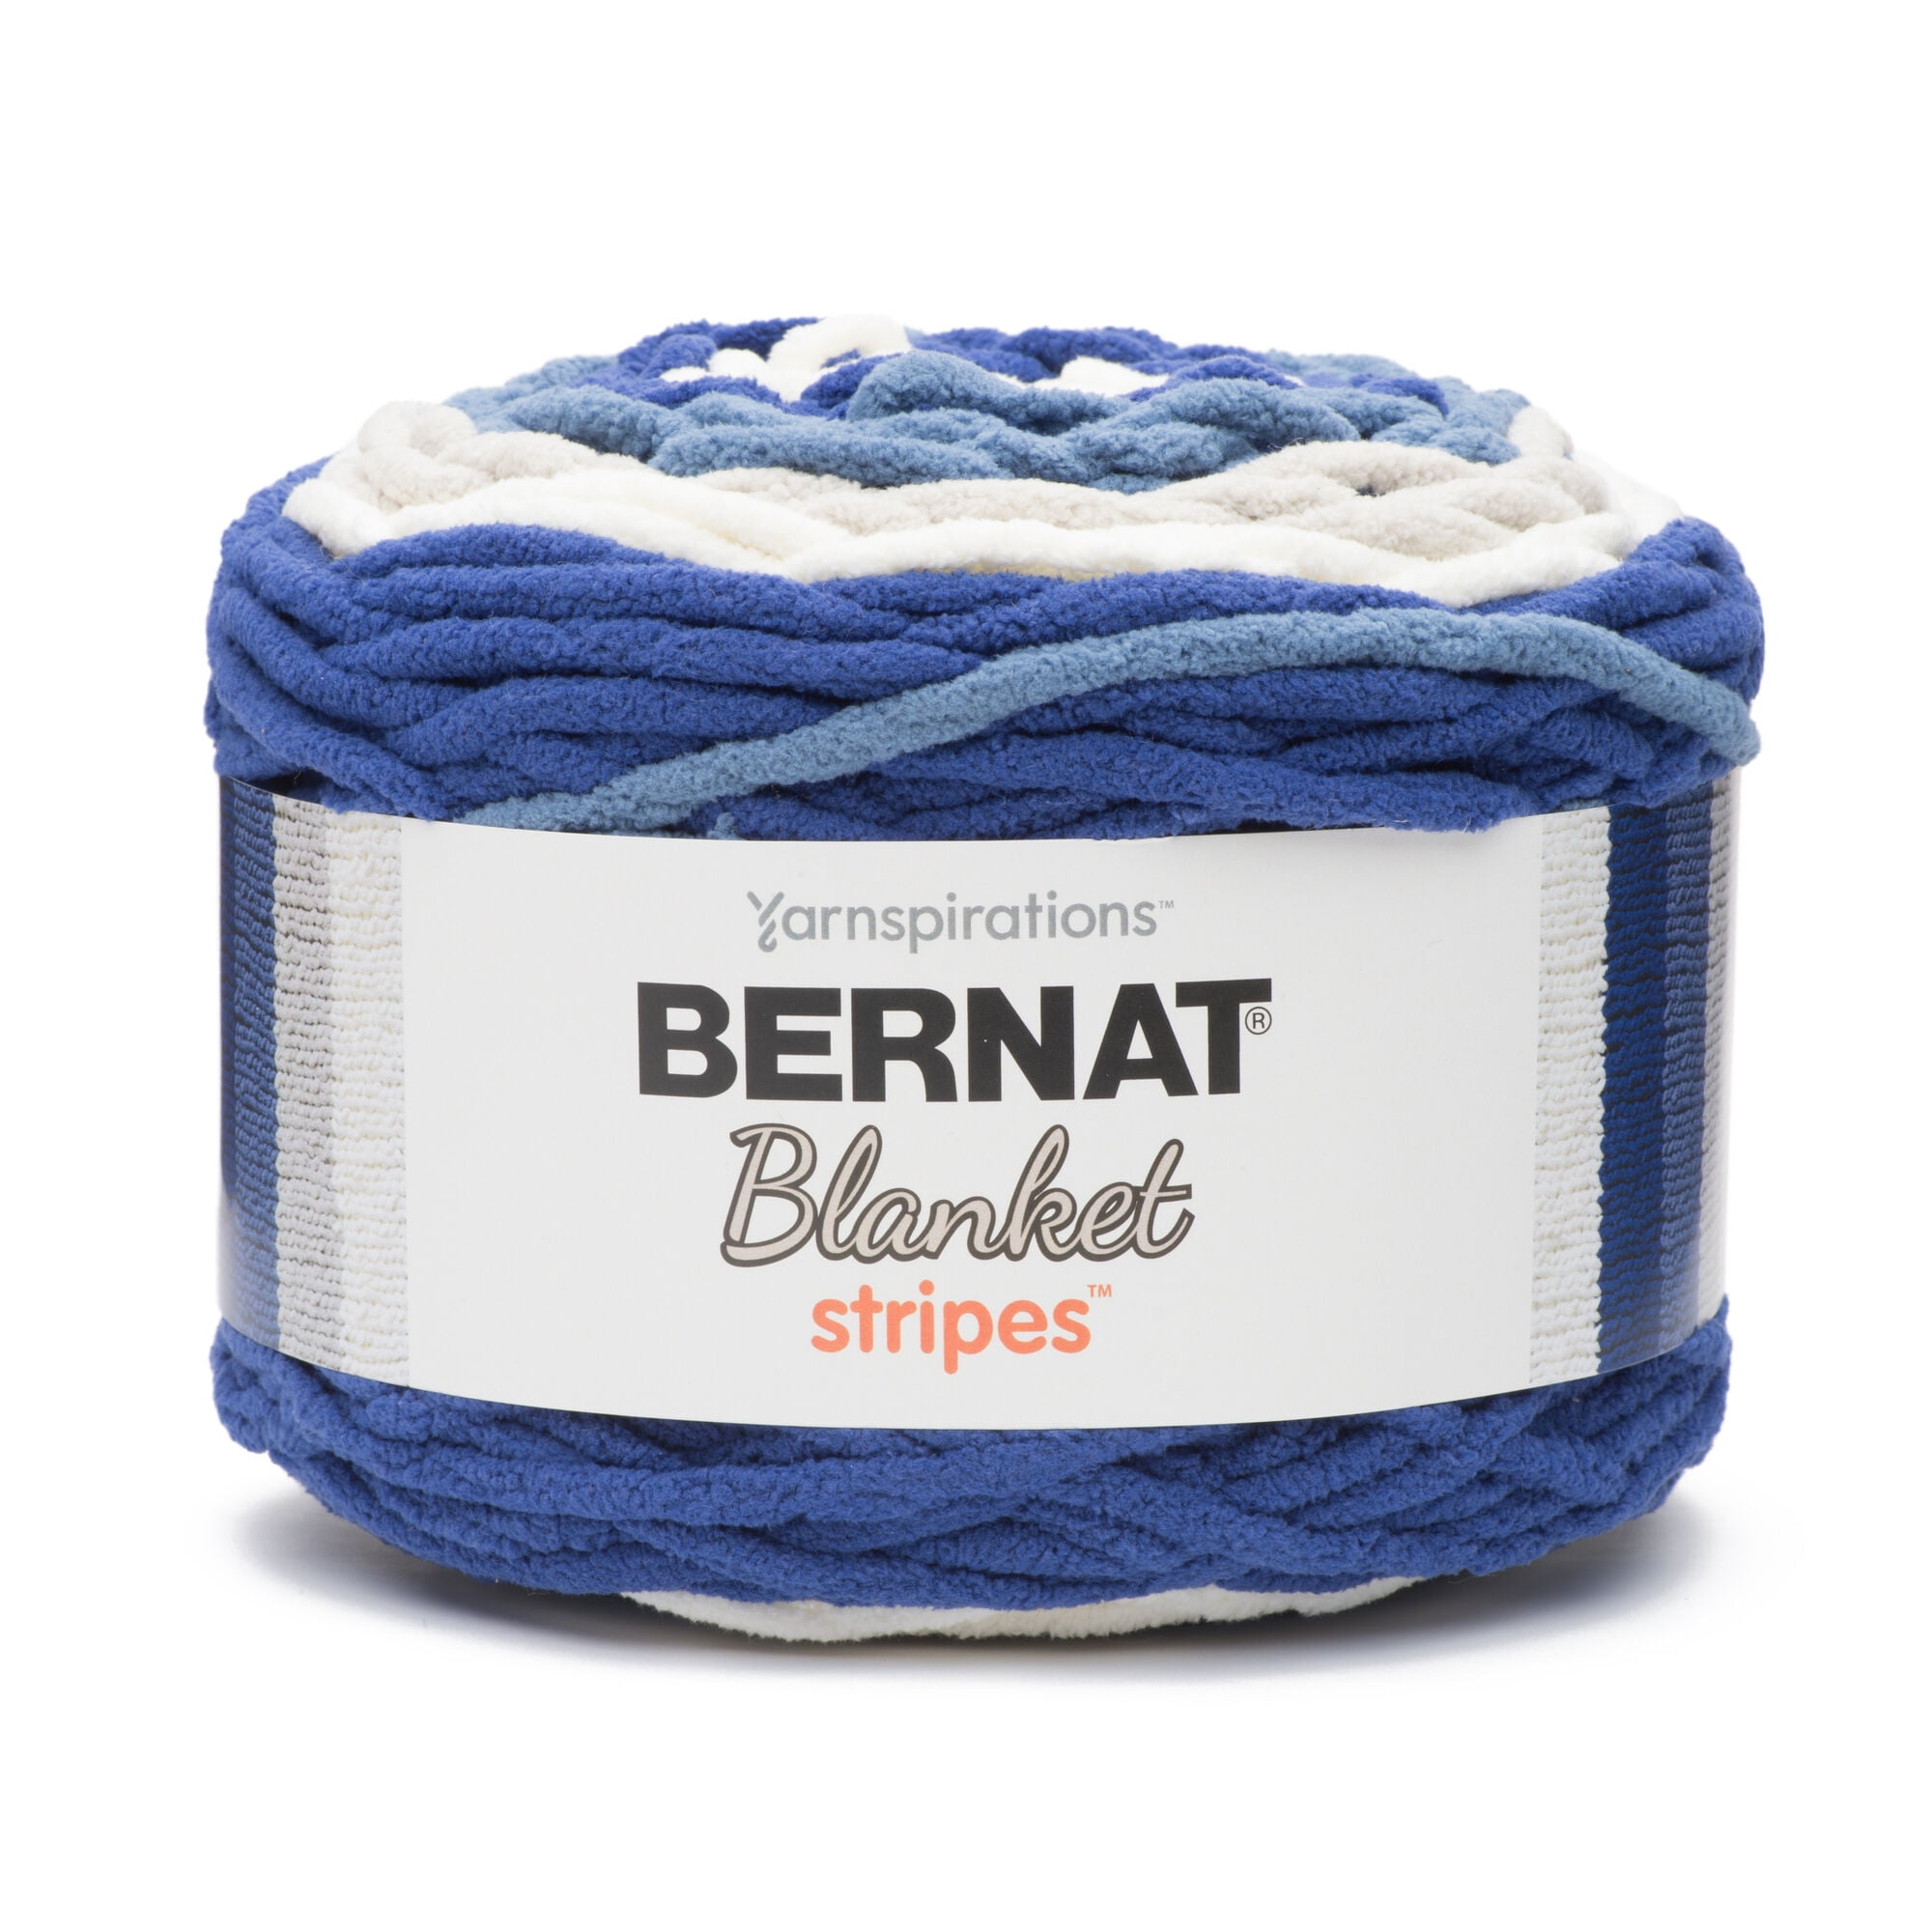 Bernat Blanket Yarn 6 Super Bulky Tan Brown blue Cloudy Sky Knit Crochet skein 